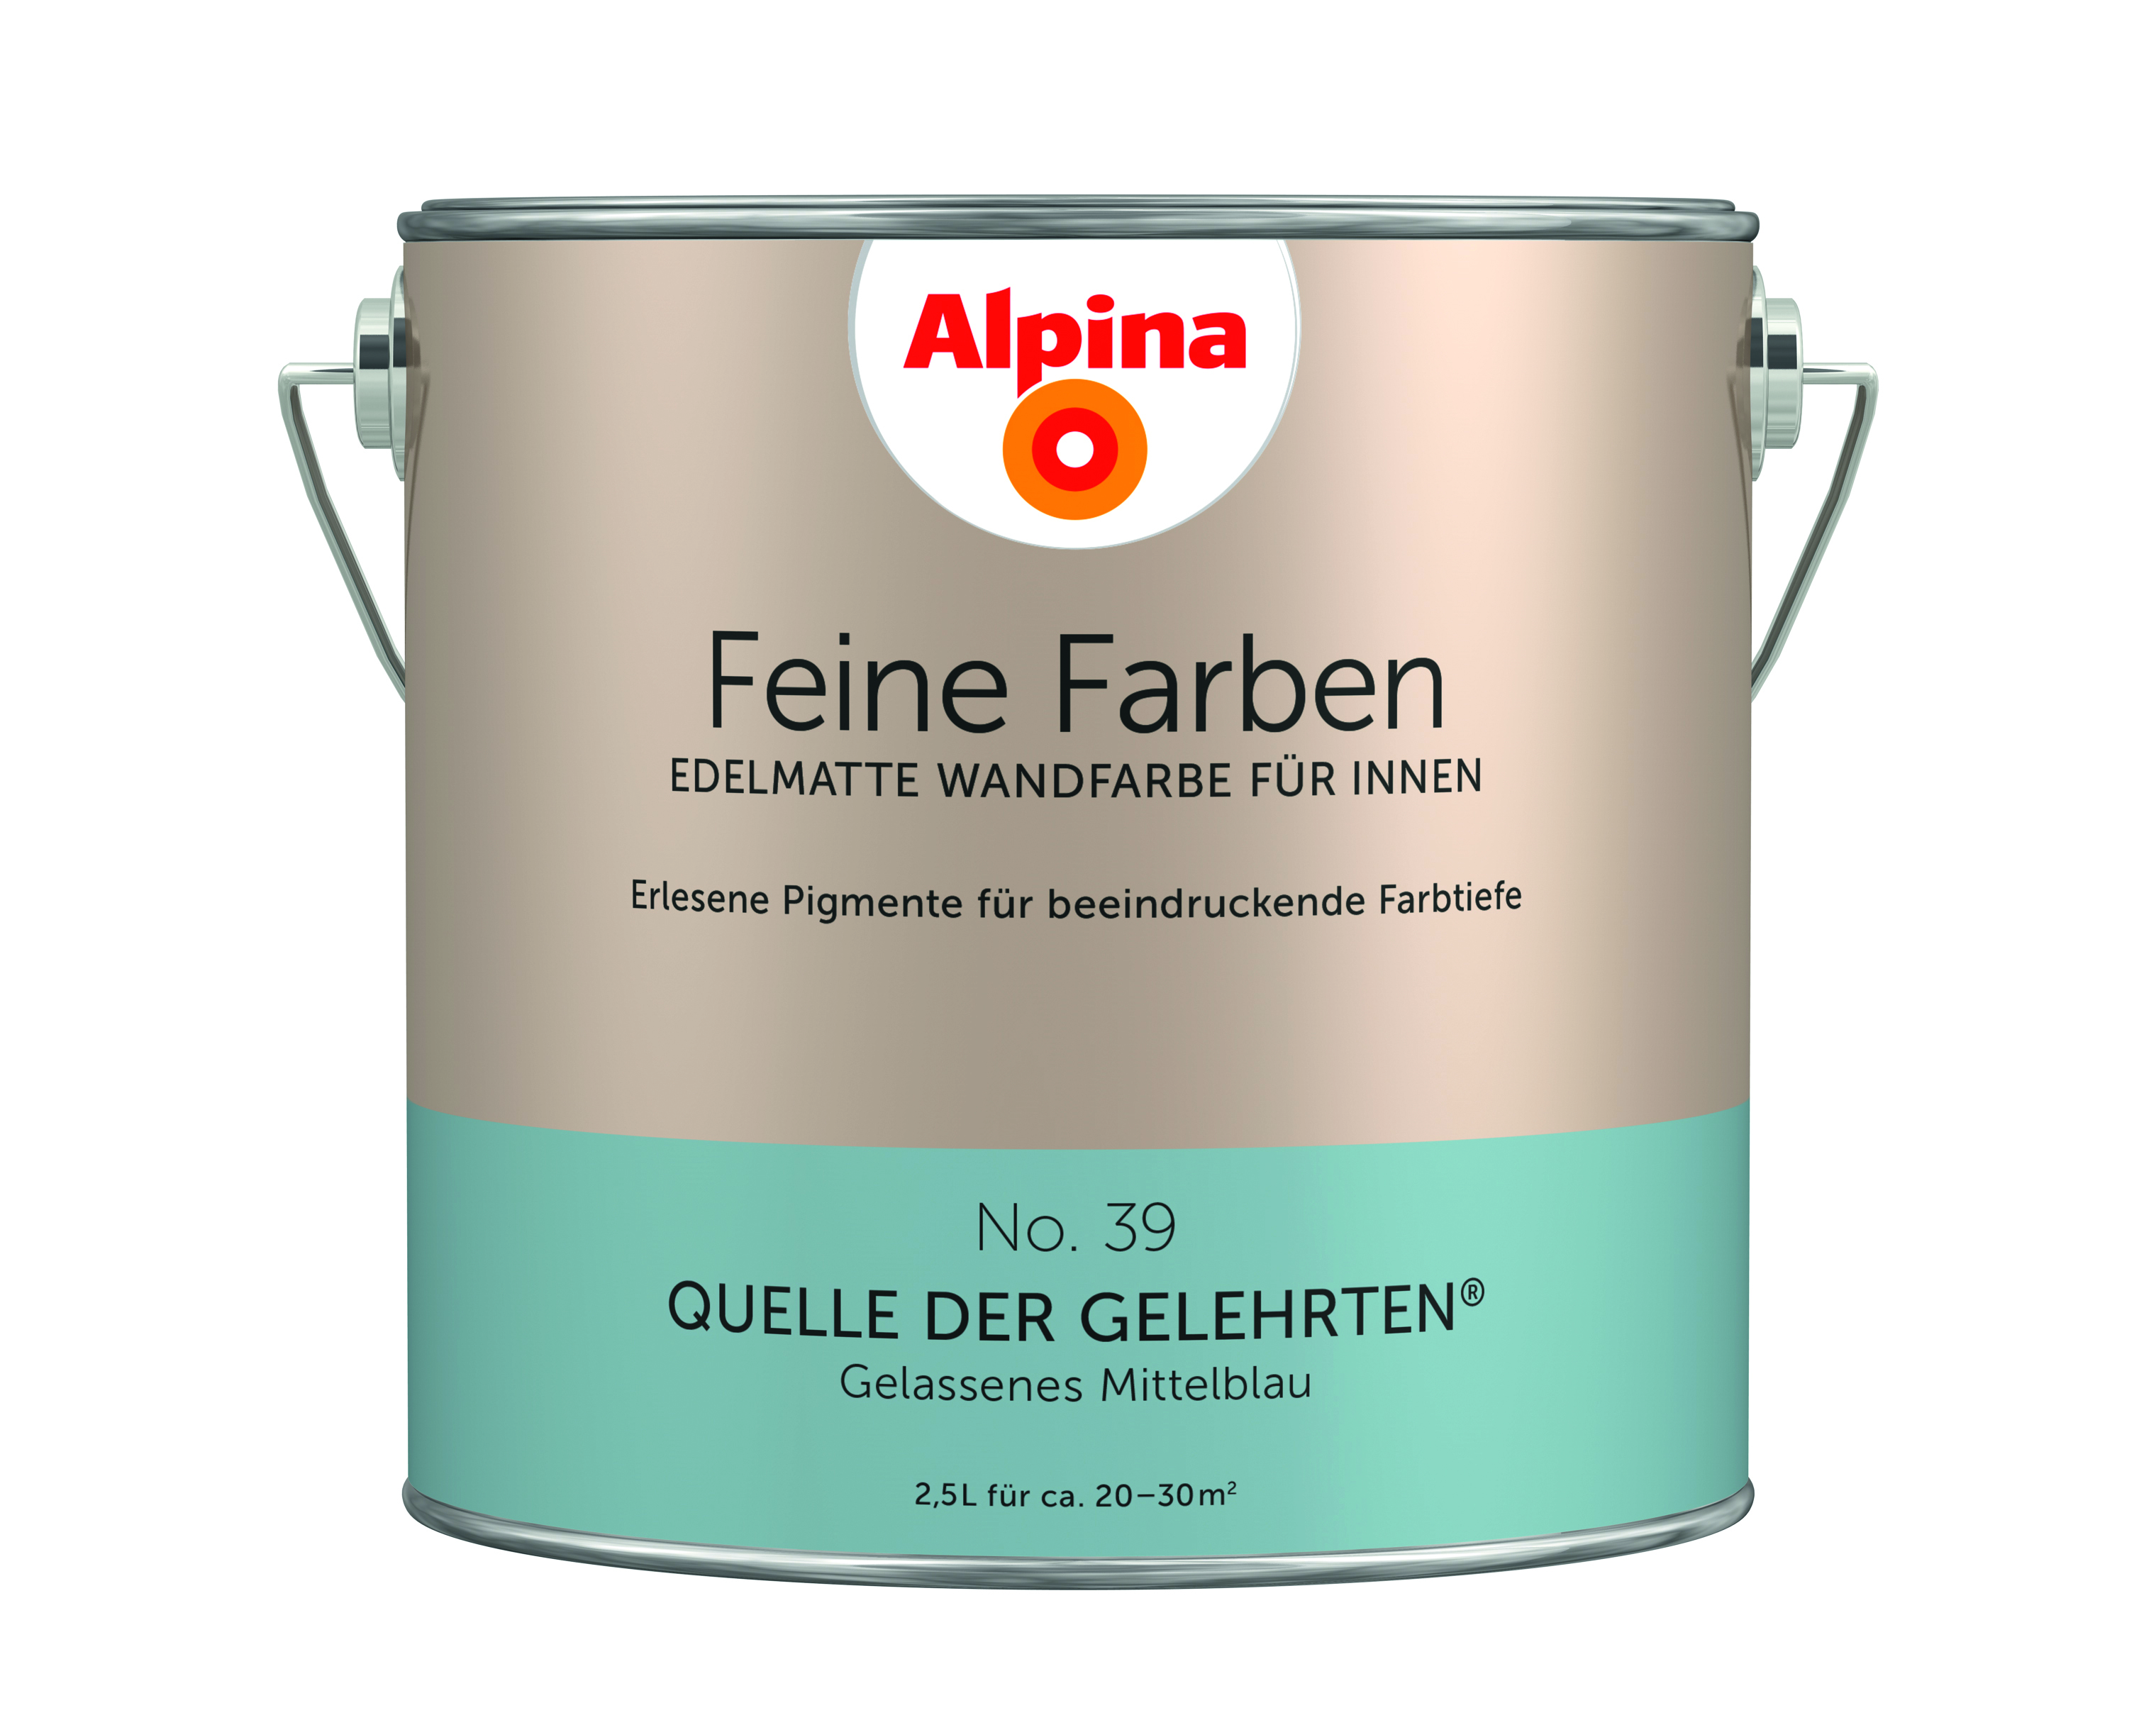 Alpina Feine Farben No. 39, Quelle der Gelehrten